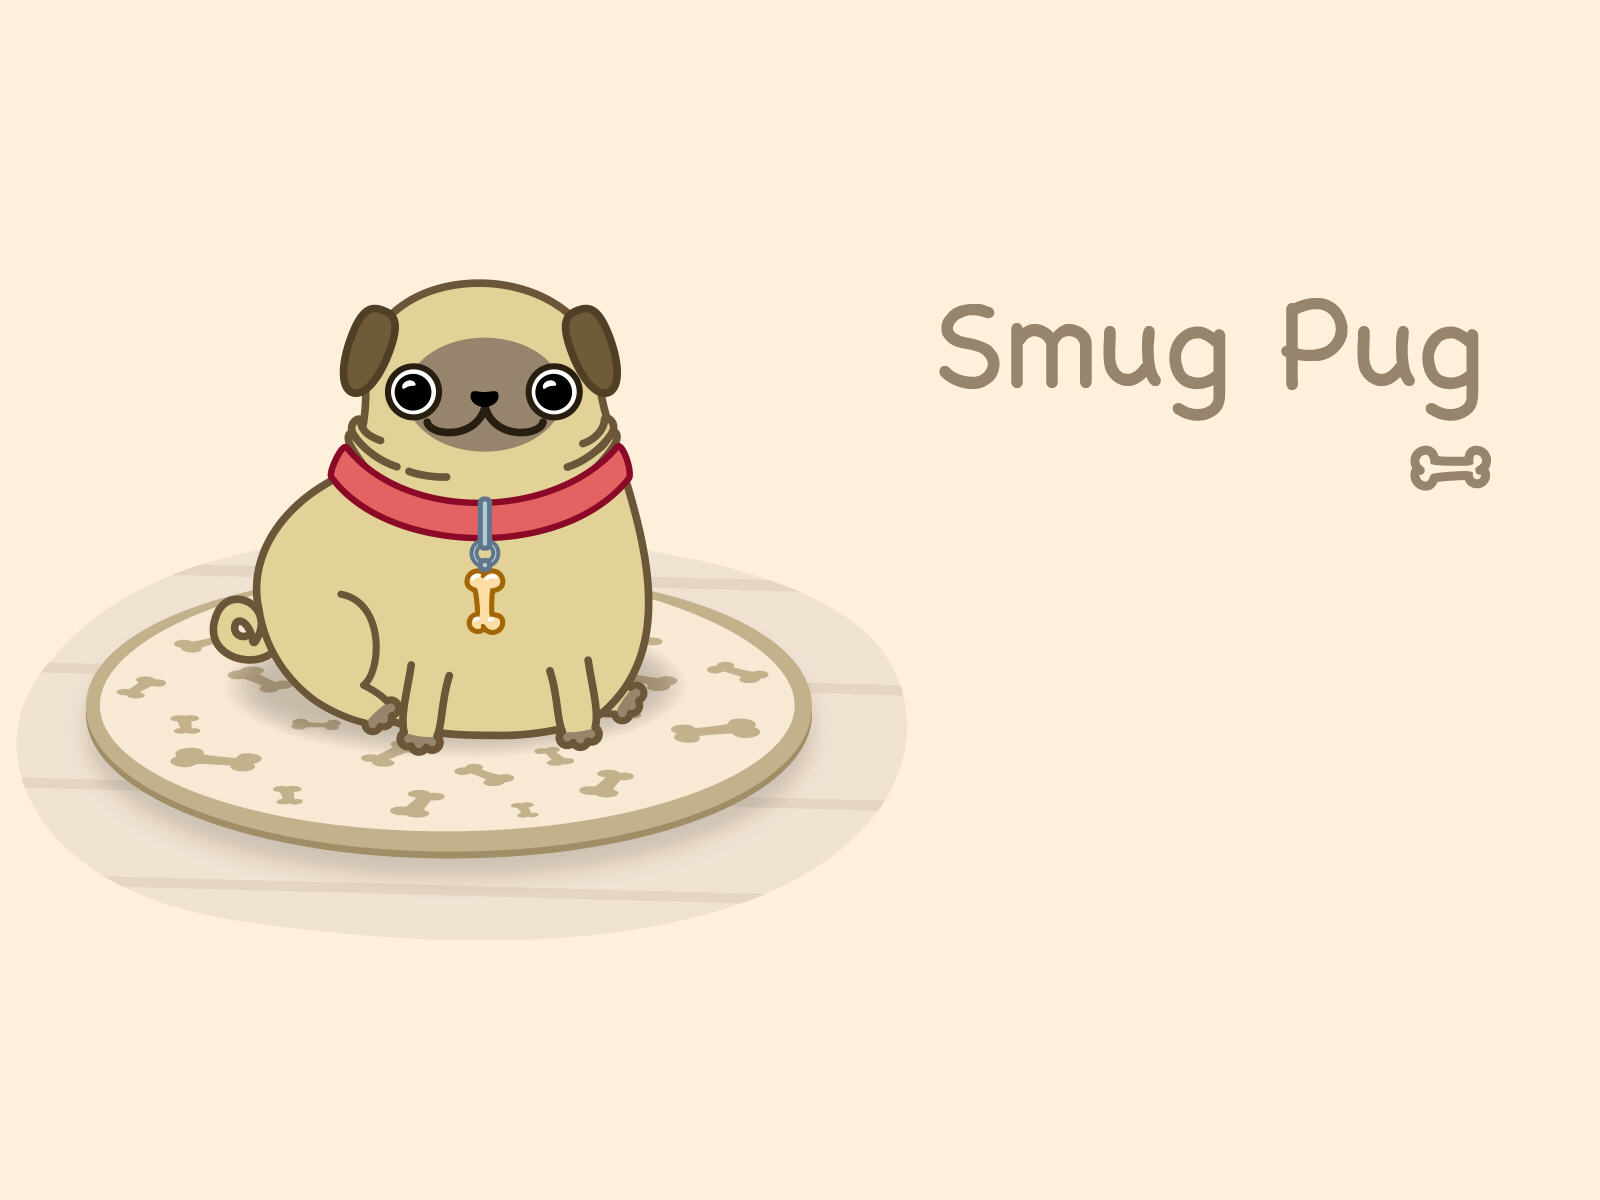 Smug Pug animal animation dog graphic design illustration